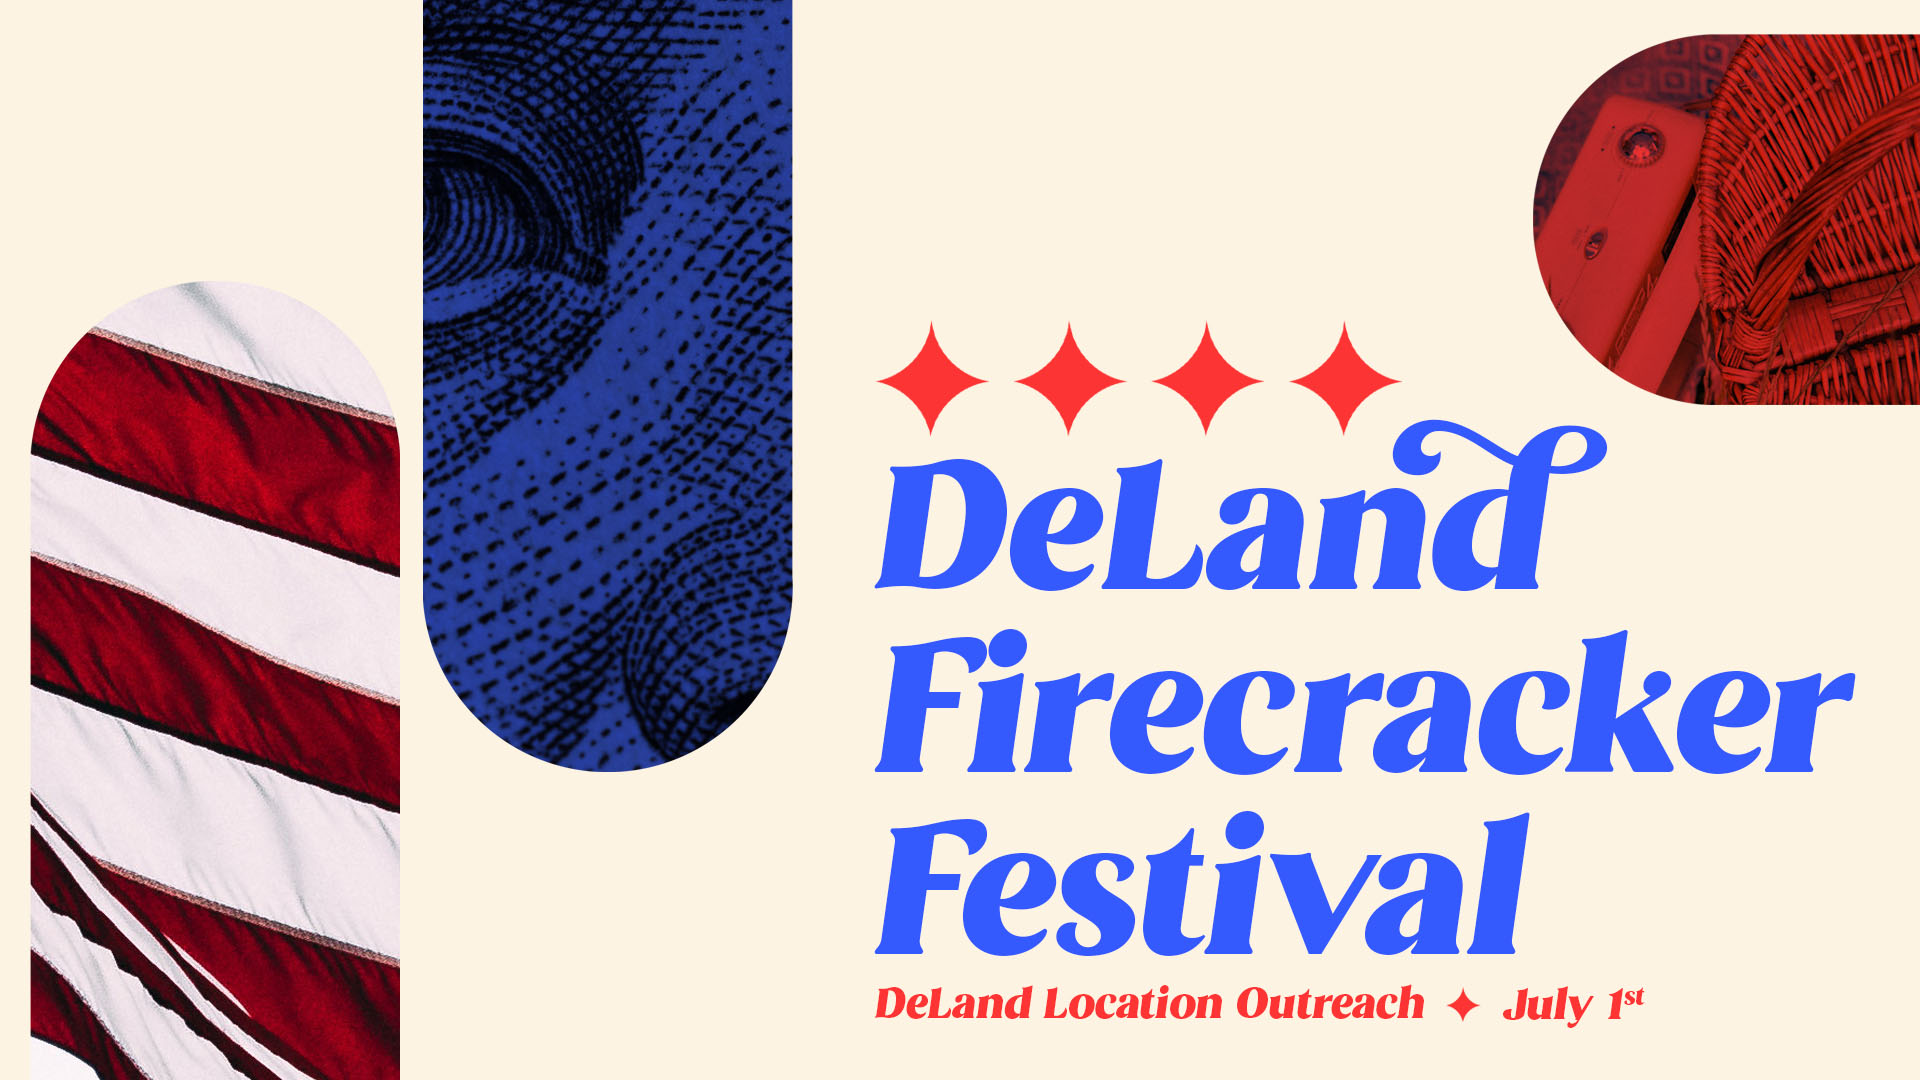 DeLand Firecracker Festival